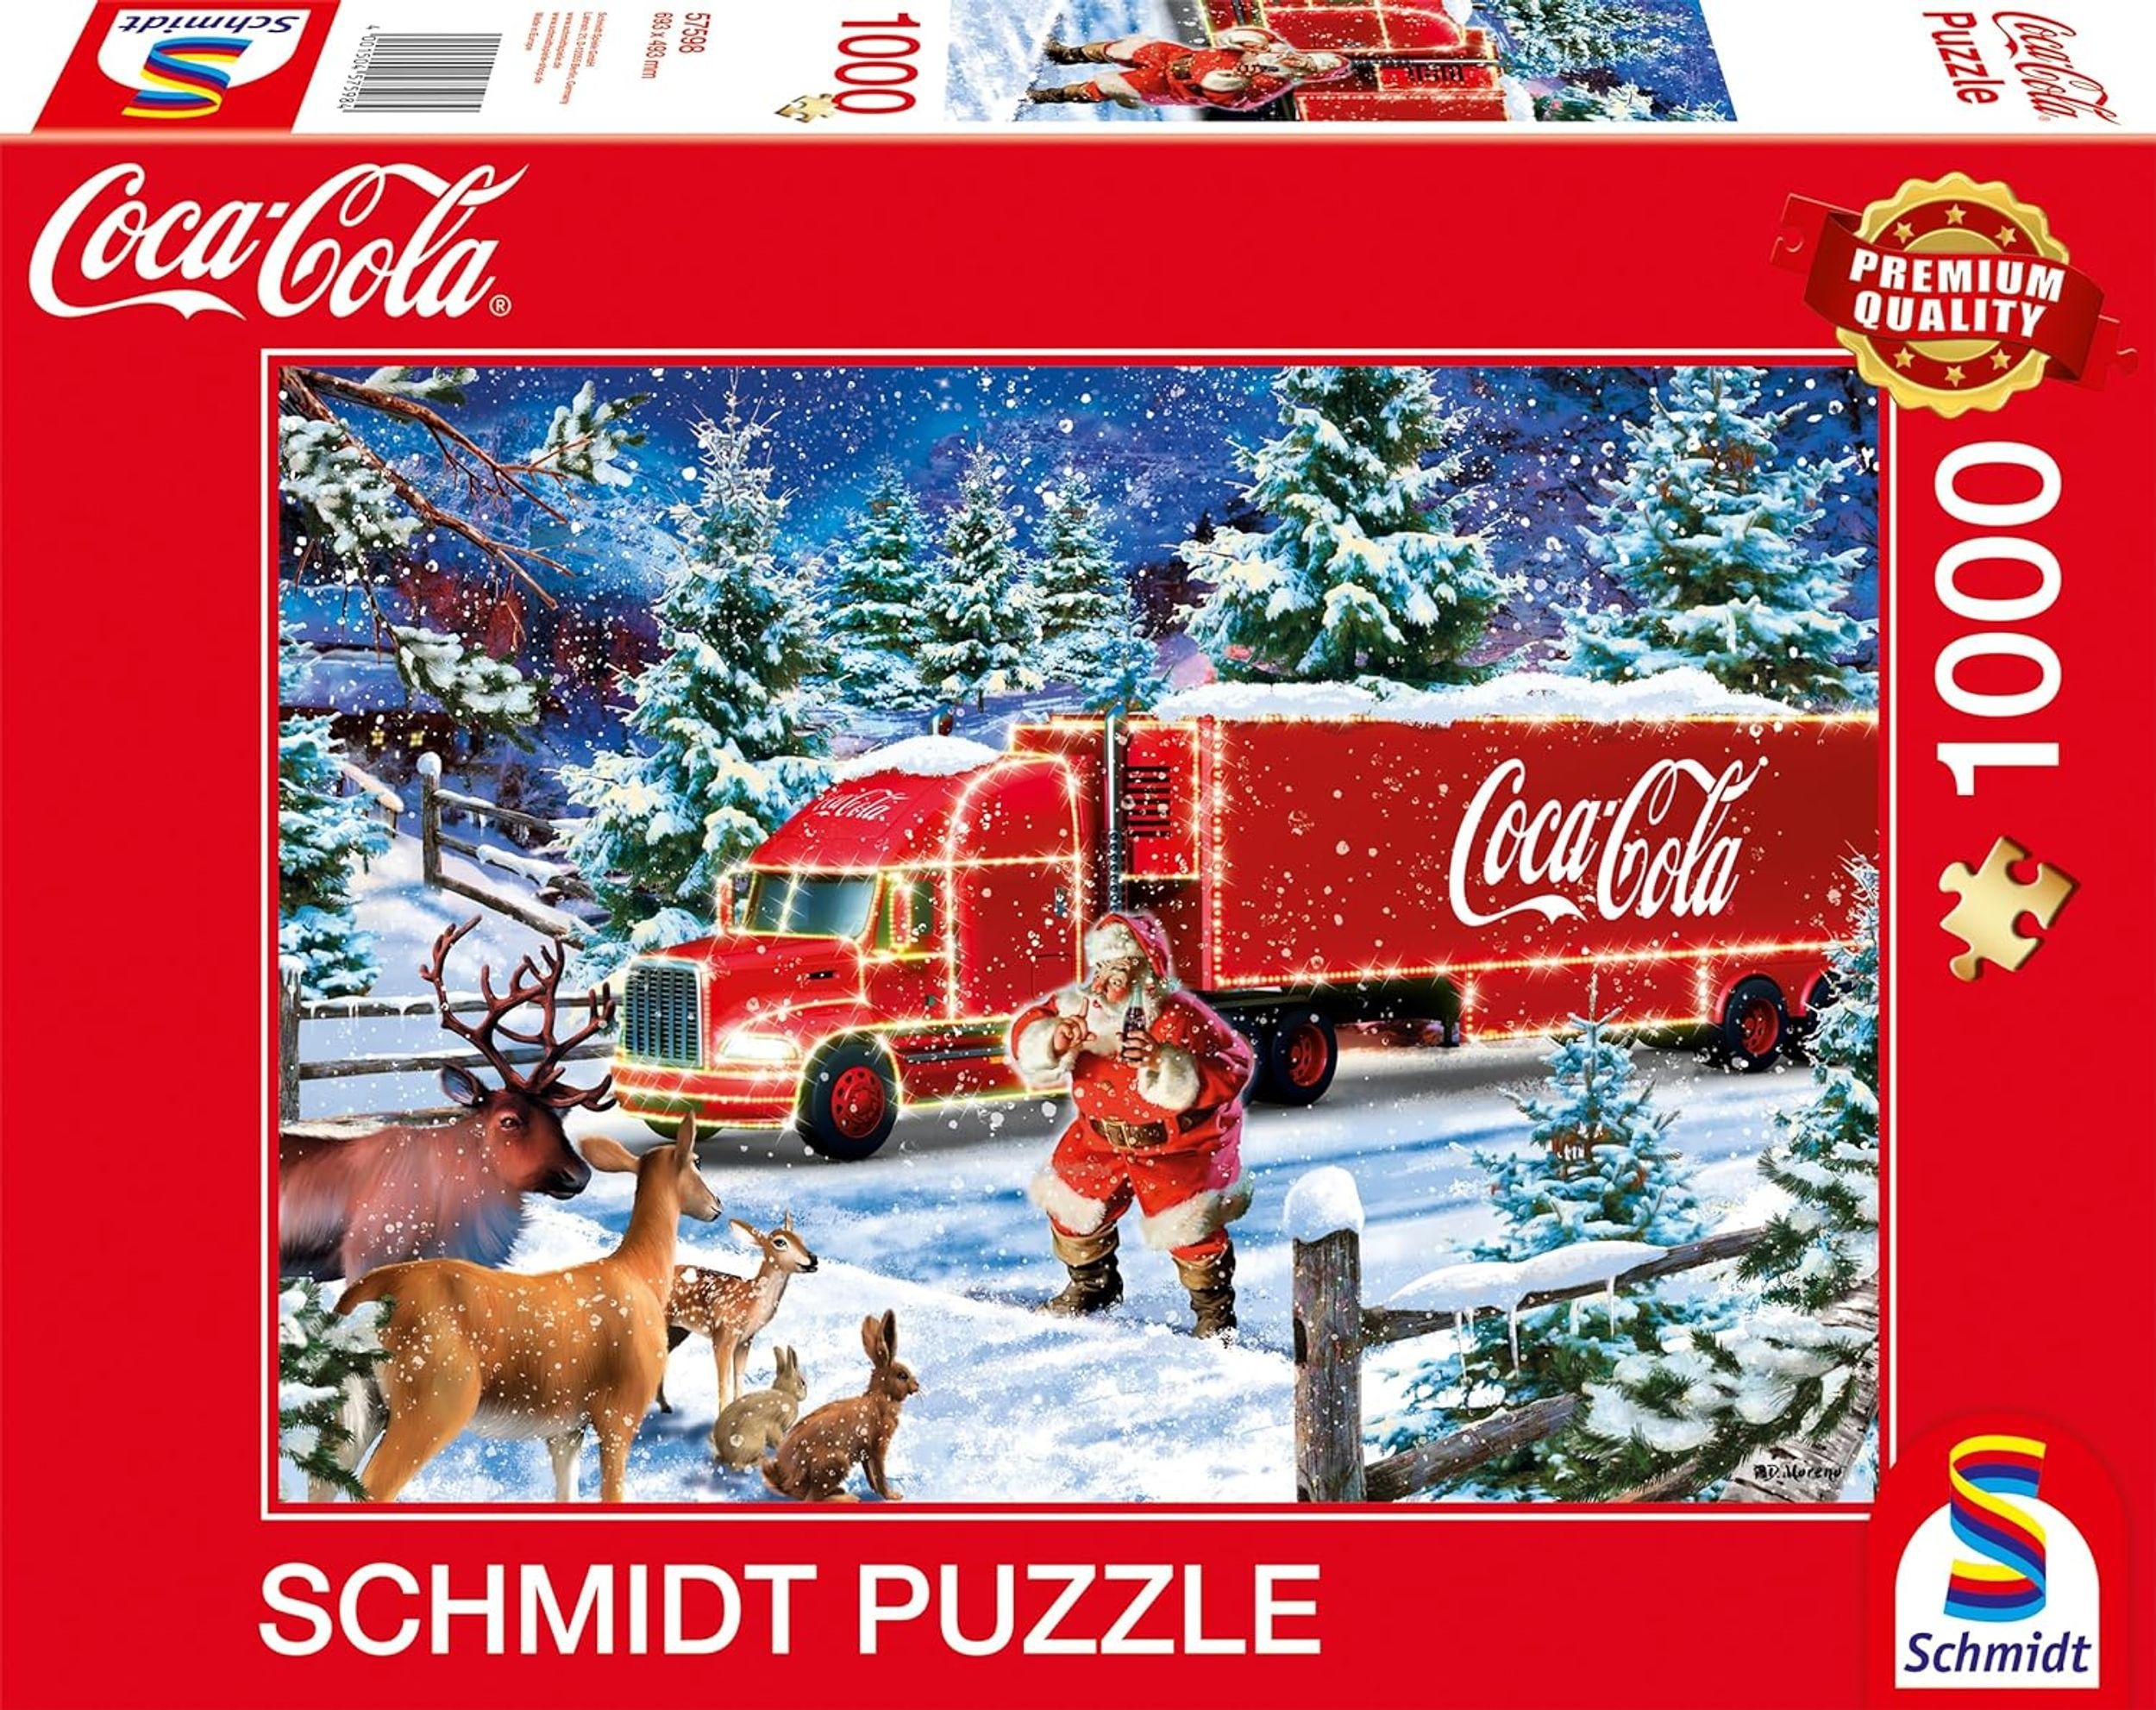 SCHMIDT SPIELE Truck Christmas Puzzle Cola Coca